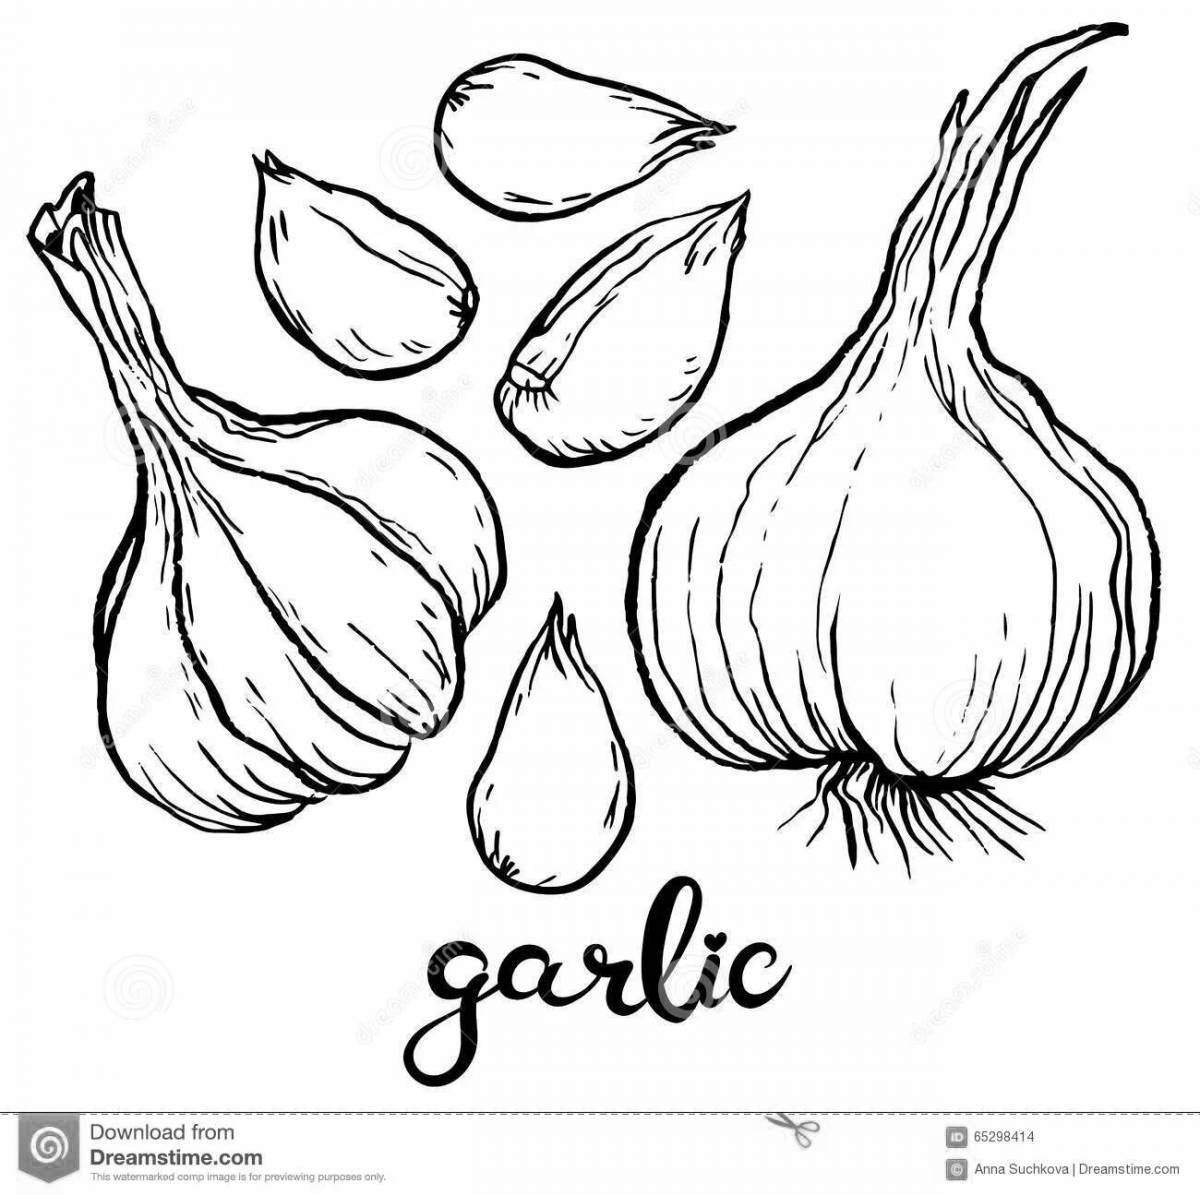 Fun garlic coloring for kids